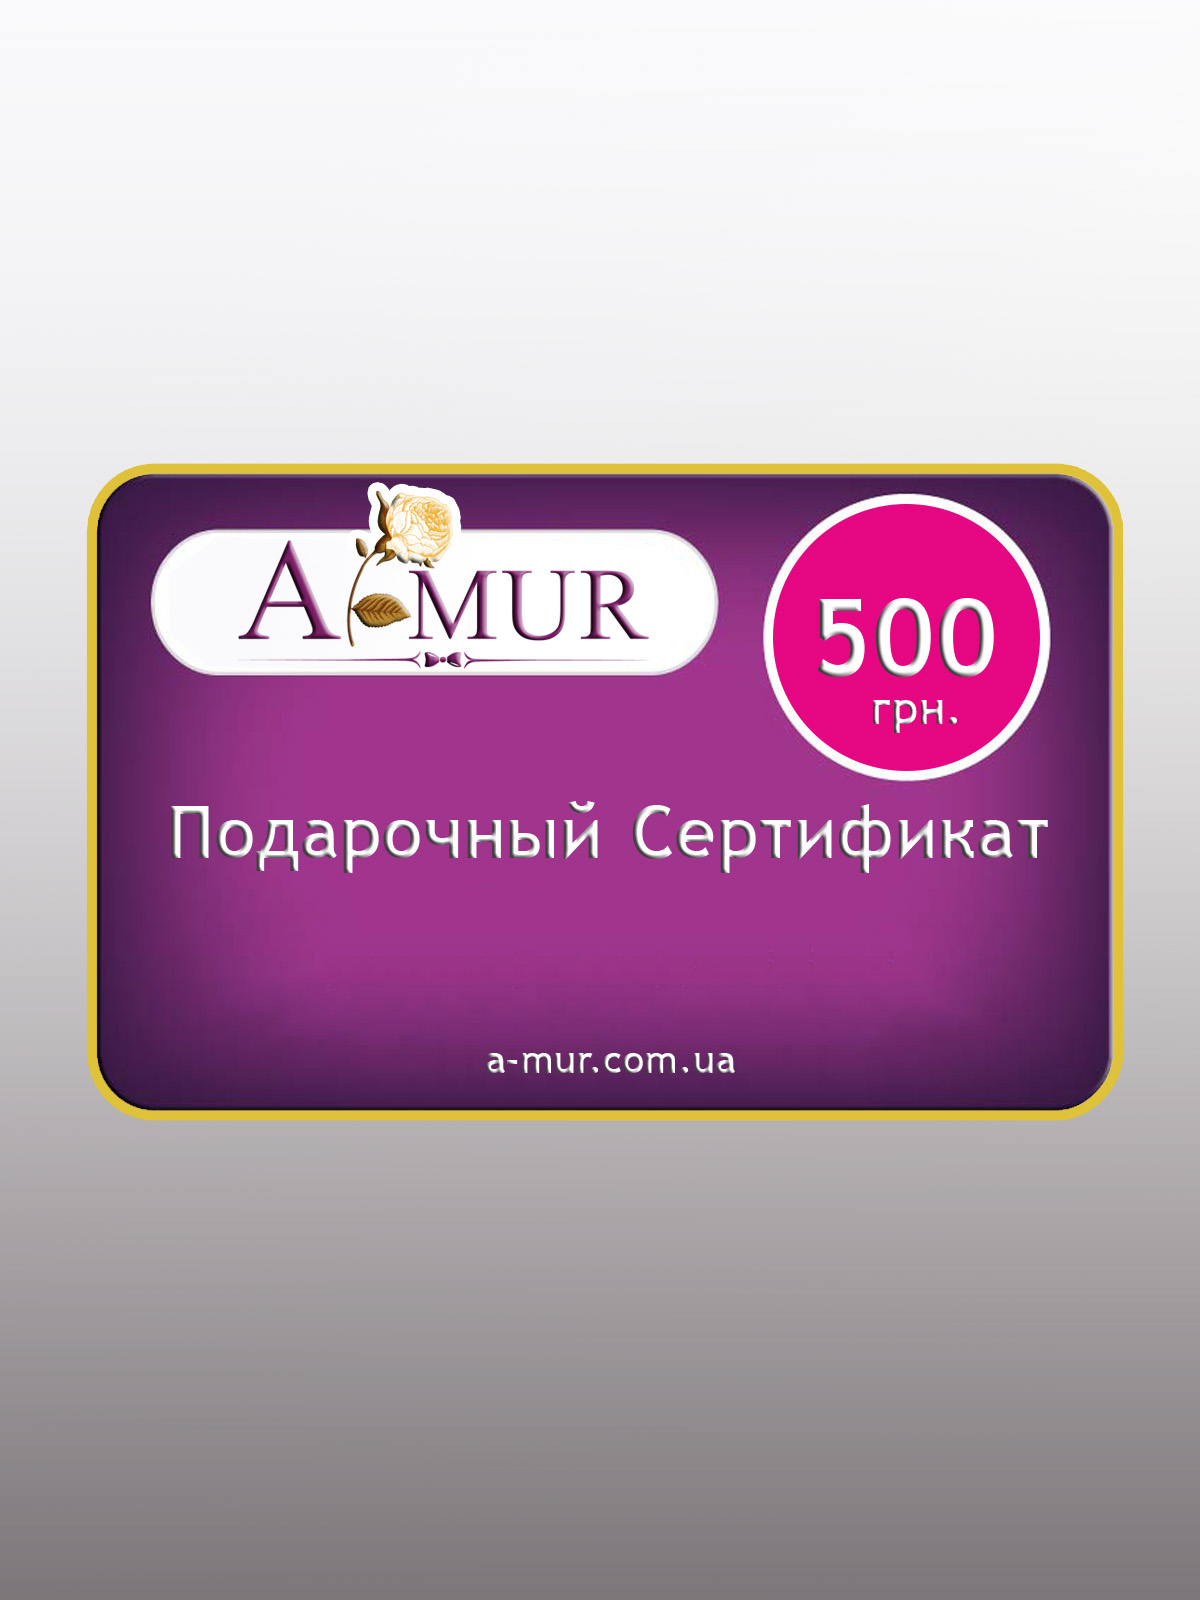 Подарочный сертификат на сумму 500 грн